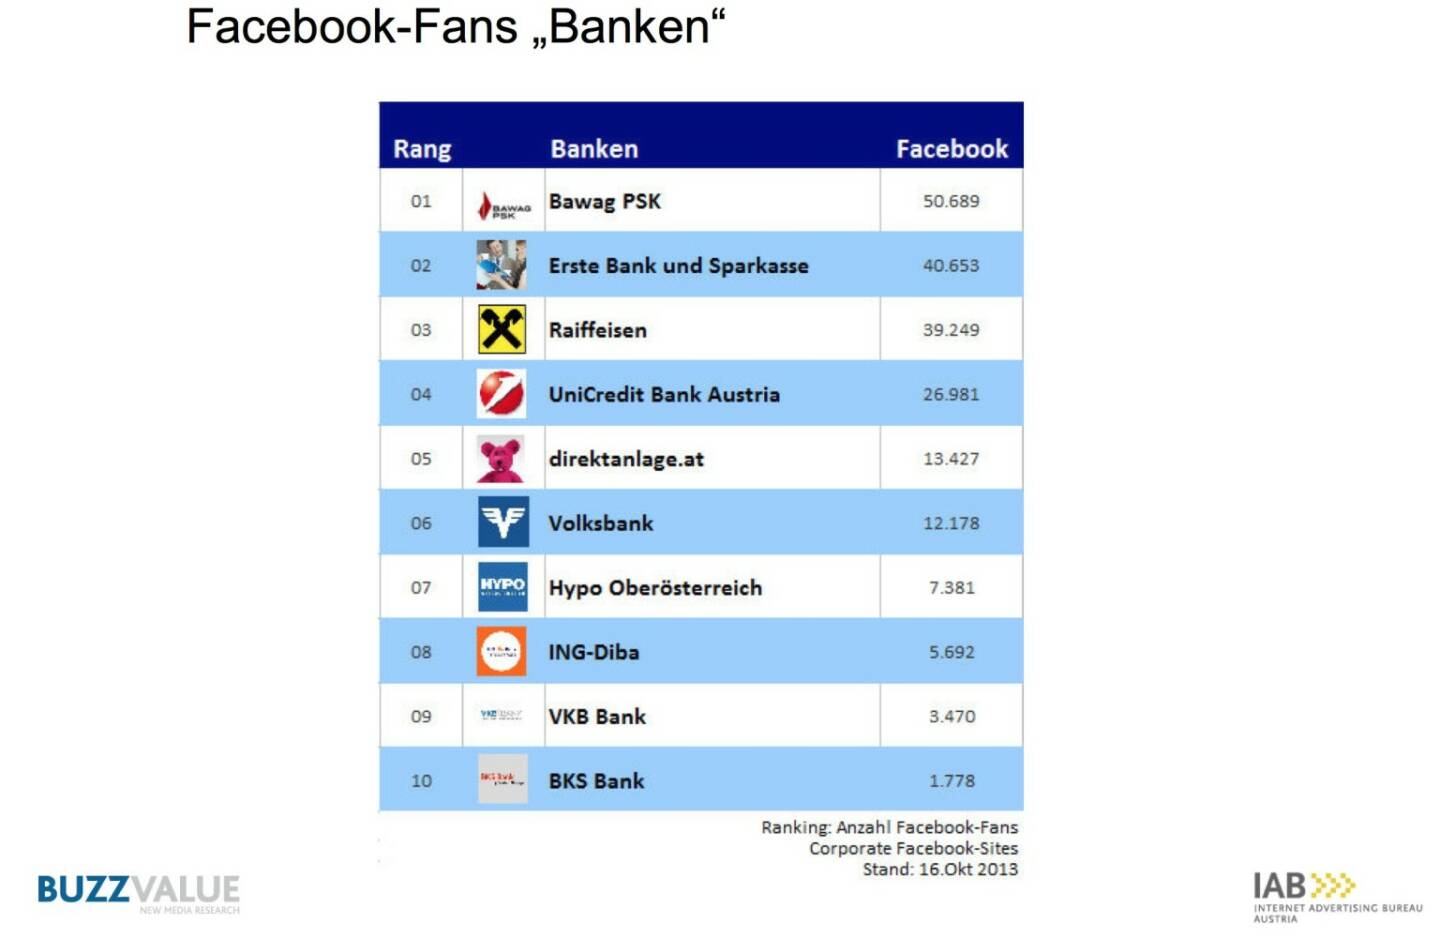 Facebook-Fanks Banken, aus der Studie IAB BrandBuzz Banken- und Finanzdienstleister http://www.iab-austria.at/iab-brand-buzz-banken-finanzdienstleister/